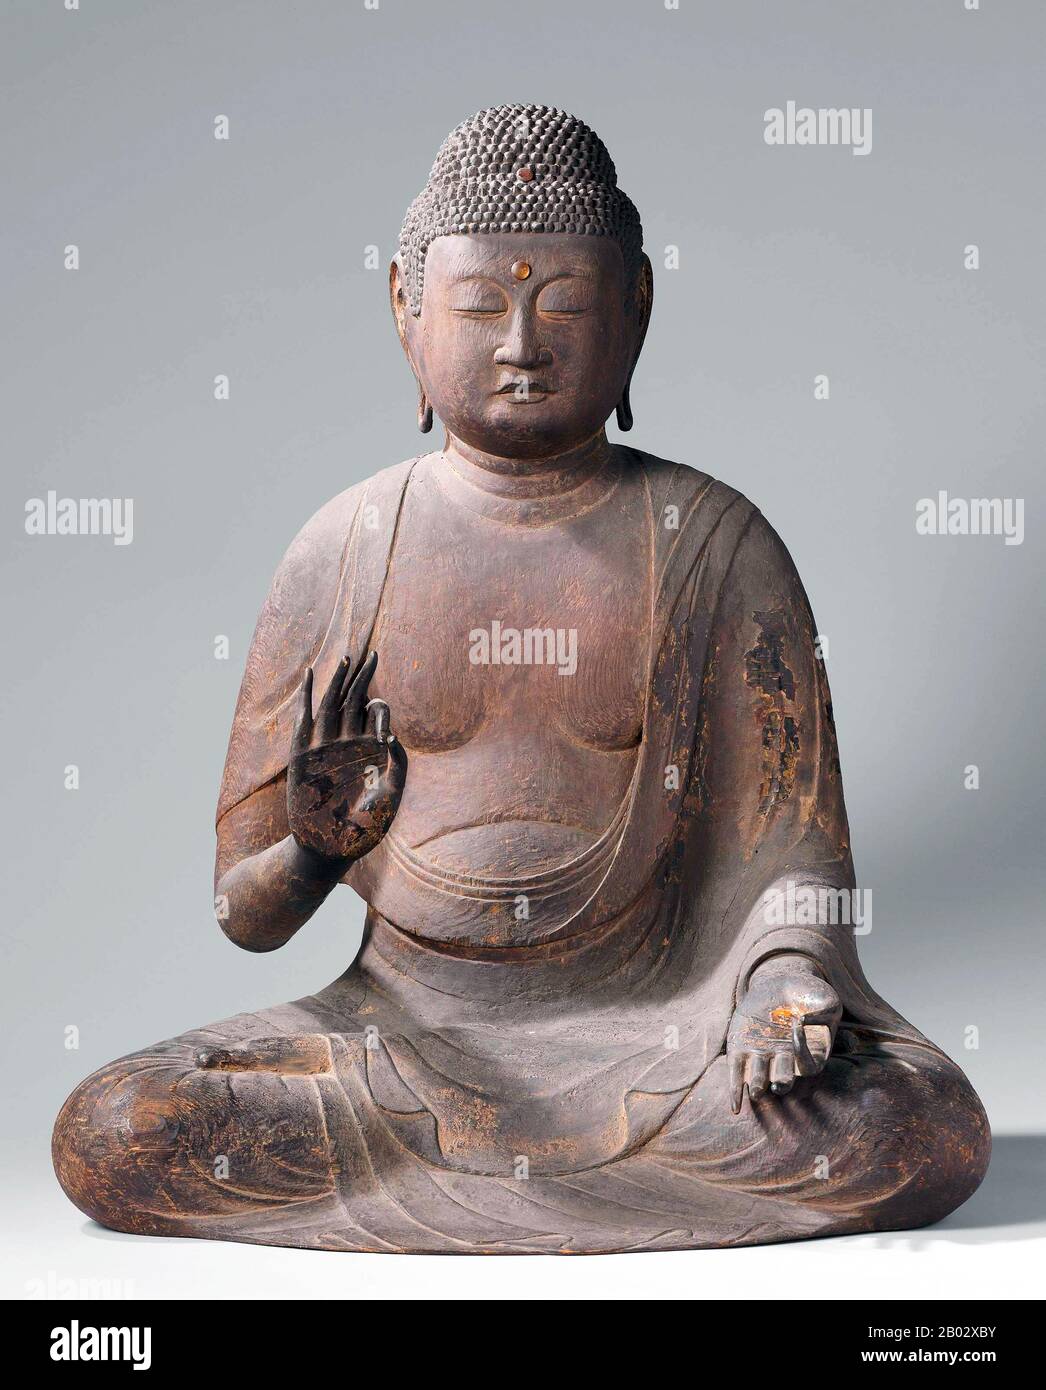 Amitabha ist ein himmels-buddha, der in den Schriften der Mahayana-Schule des Buddhismus beschrieben wird. Amitabha ist der HauptBuddha in der Sekte Des Reinen Landes, einem Zweig des Buddhismus, der hauptsächlich in Ostasien praktiziert wird, während in Vajrayana Amitabha für sein Attribut der Langlebigkeit, das magnetisierende rote Feuerelement, die Gesamtheit der Unterscheidung, die reine Wahrnehmung und das tiefe Bewusstsein der Leere der Phänomene bekannt ist. Nach diesen Schriften besitzt Amitabha unendliche Vorzüge, die sich aus guten Taten in unzähligen vergangenen Leben als Bodhisattva namens Dharmakara ergeben. "Amitabha" wird daher als "Unendliches Licht" übersetzt Stockfoto